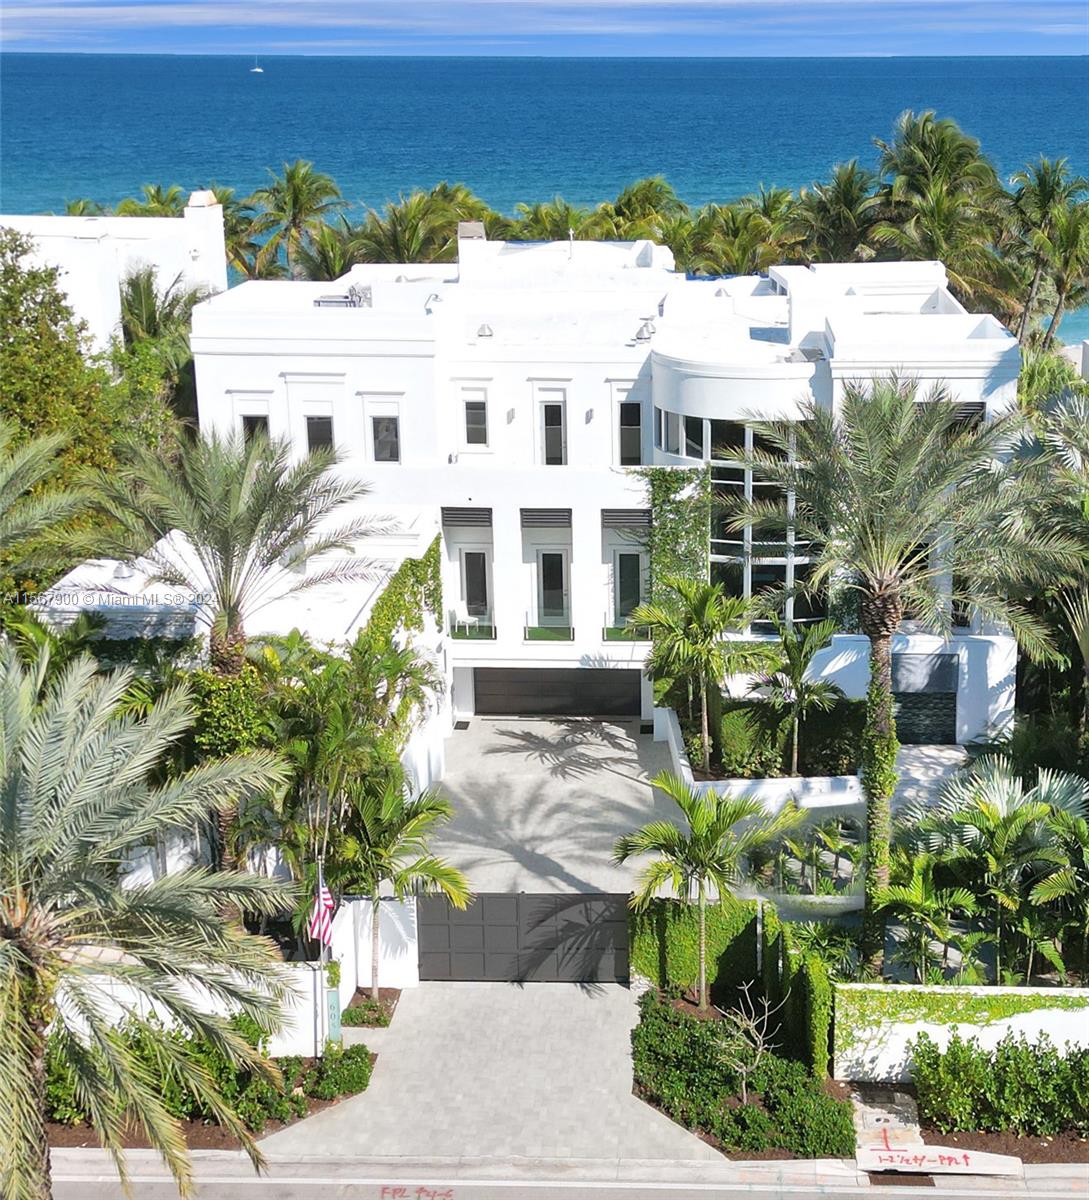 Property for Sale at 605 Ocean Blvd, Golden Beach, Miami-Dade County, Florida - Bedrooms: 7 
Bathrooms: 10.5  - $42,000,000